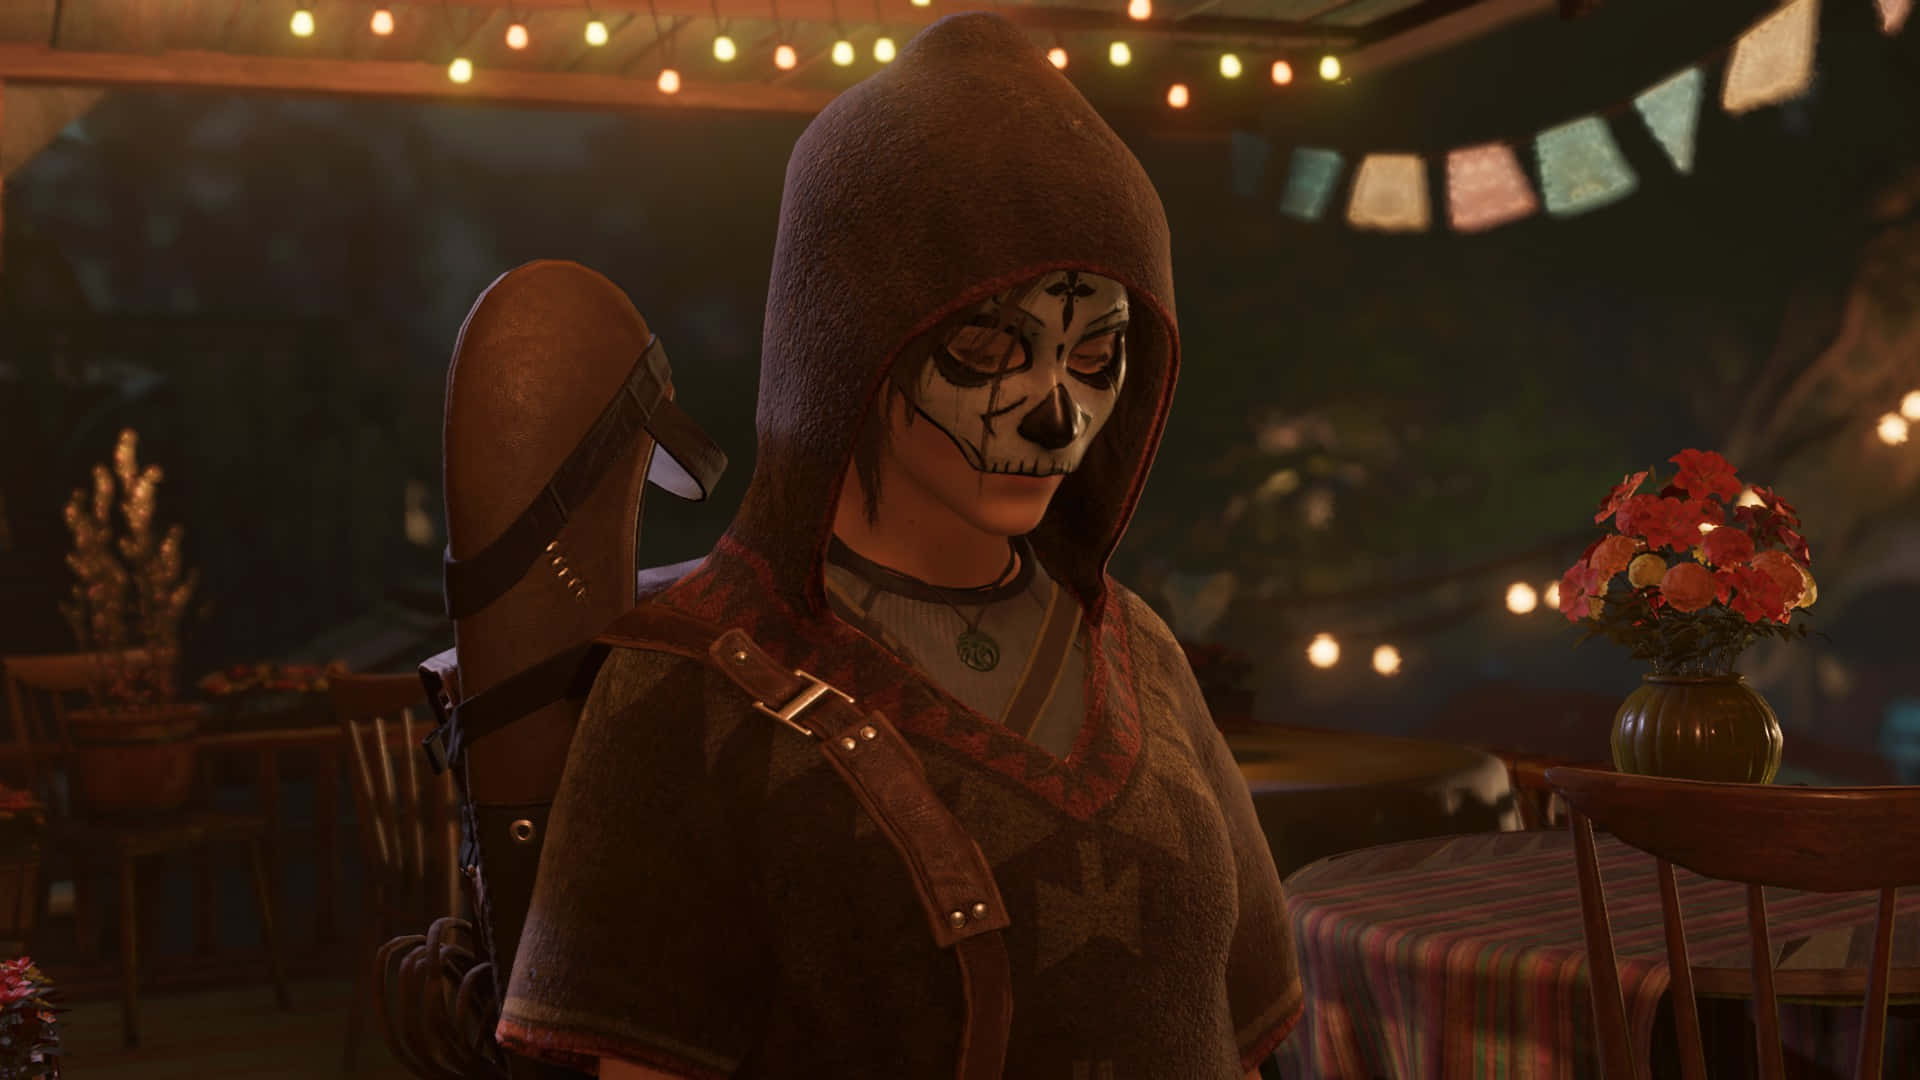 Migliorsfondo Di Shadow Of The Tomb Raider Per Il Giorno Dei Morti.